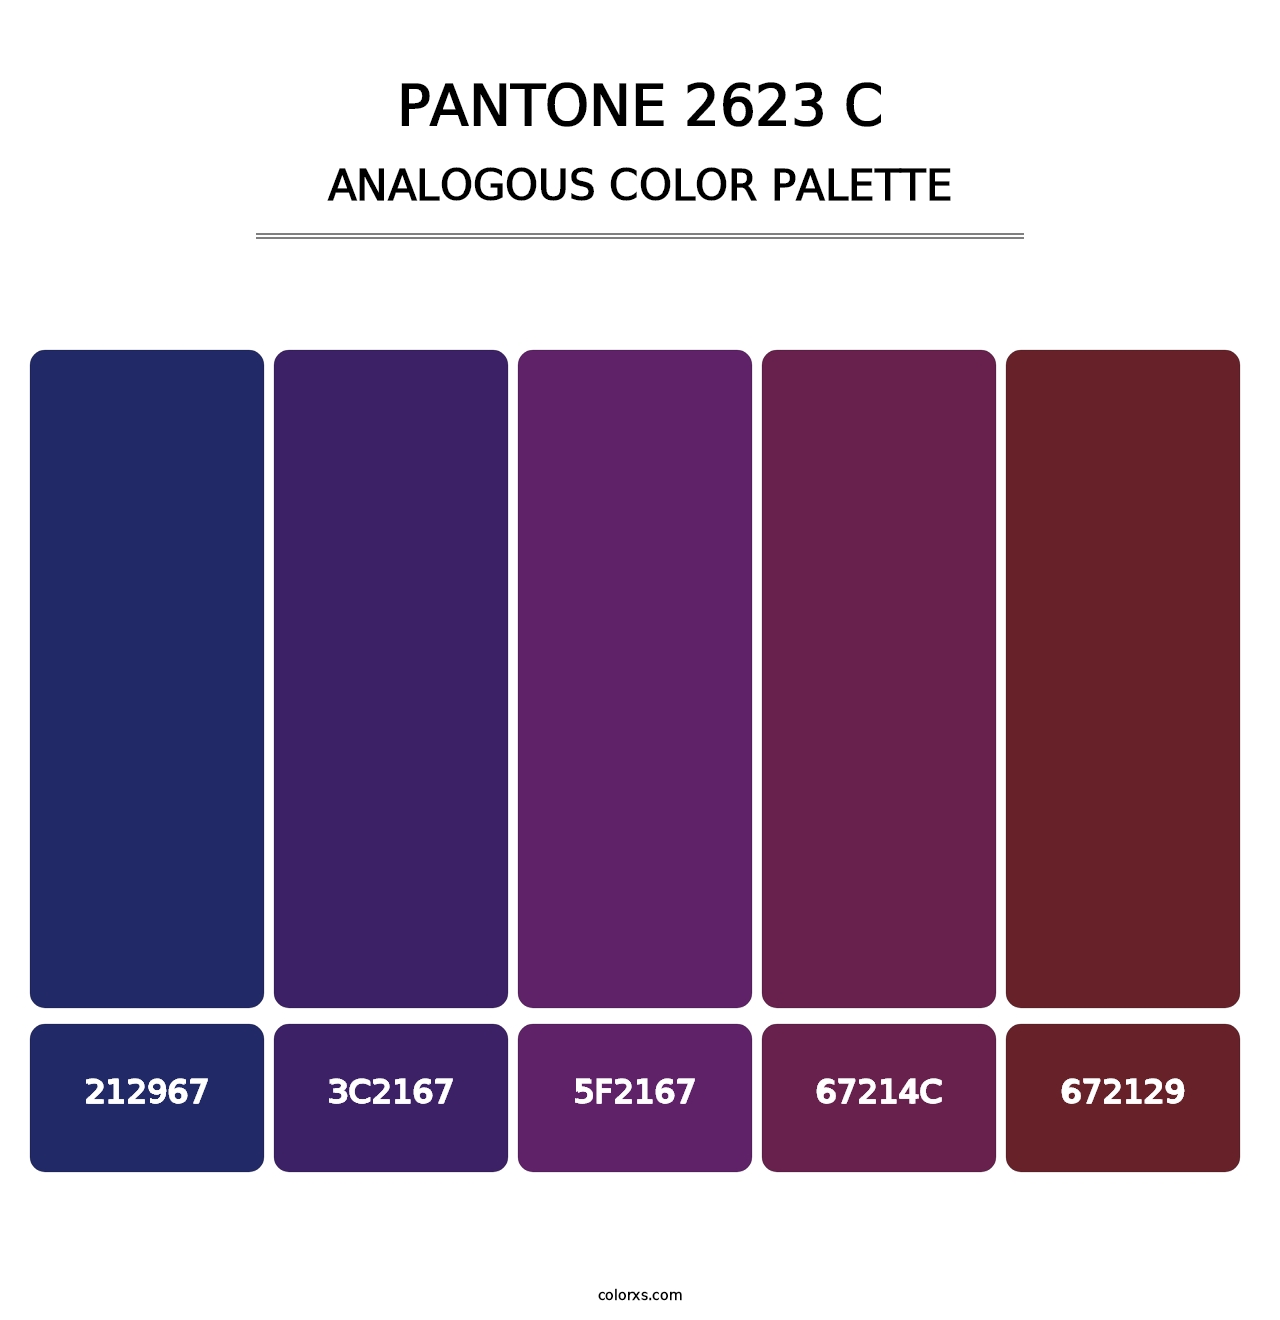 PANTONE 2623 C - Analogous Color Palette